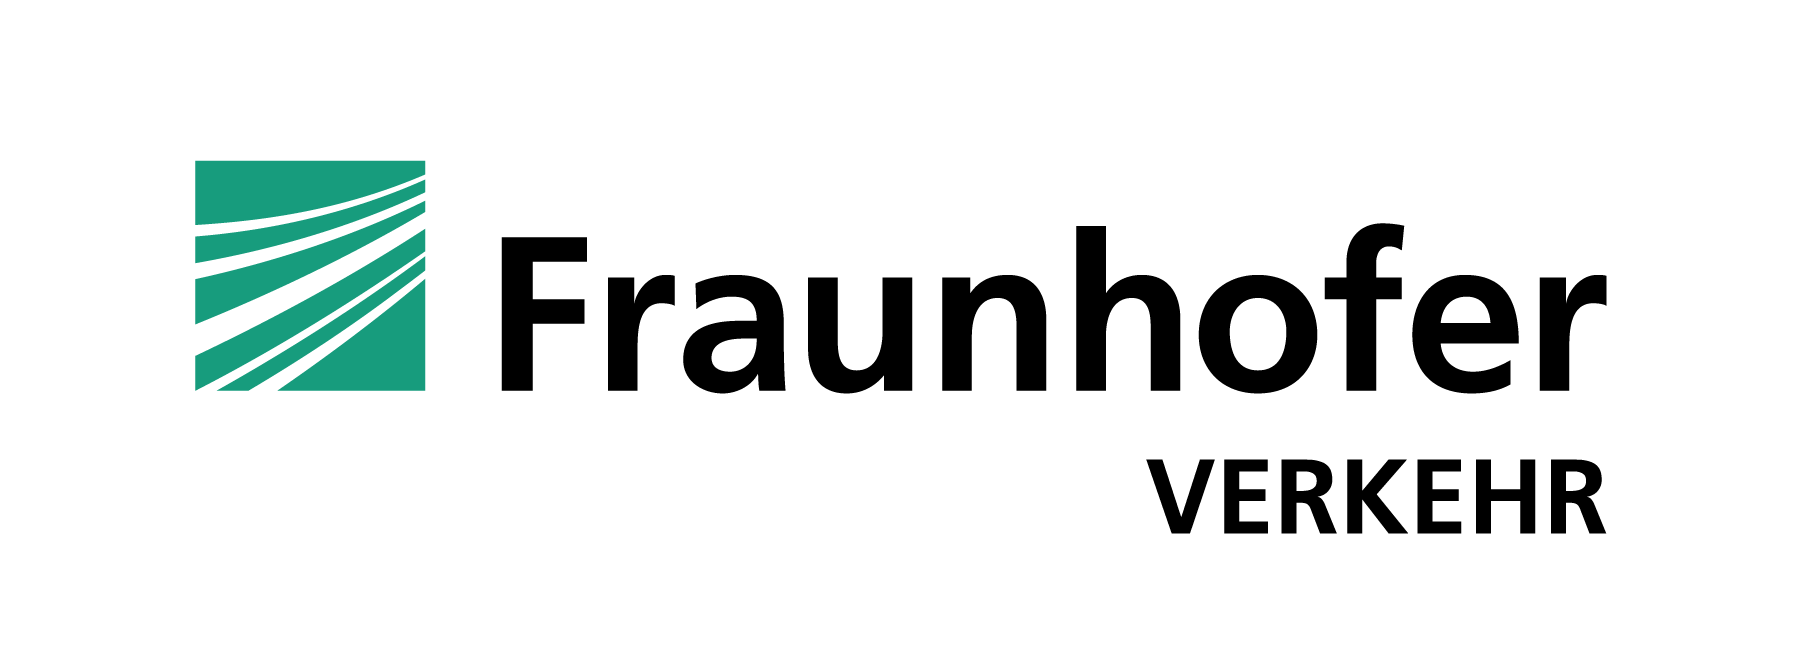 Logo Fraunhofer VERKEHR